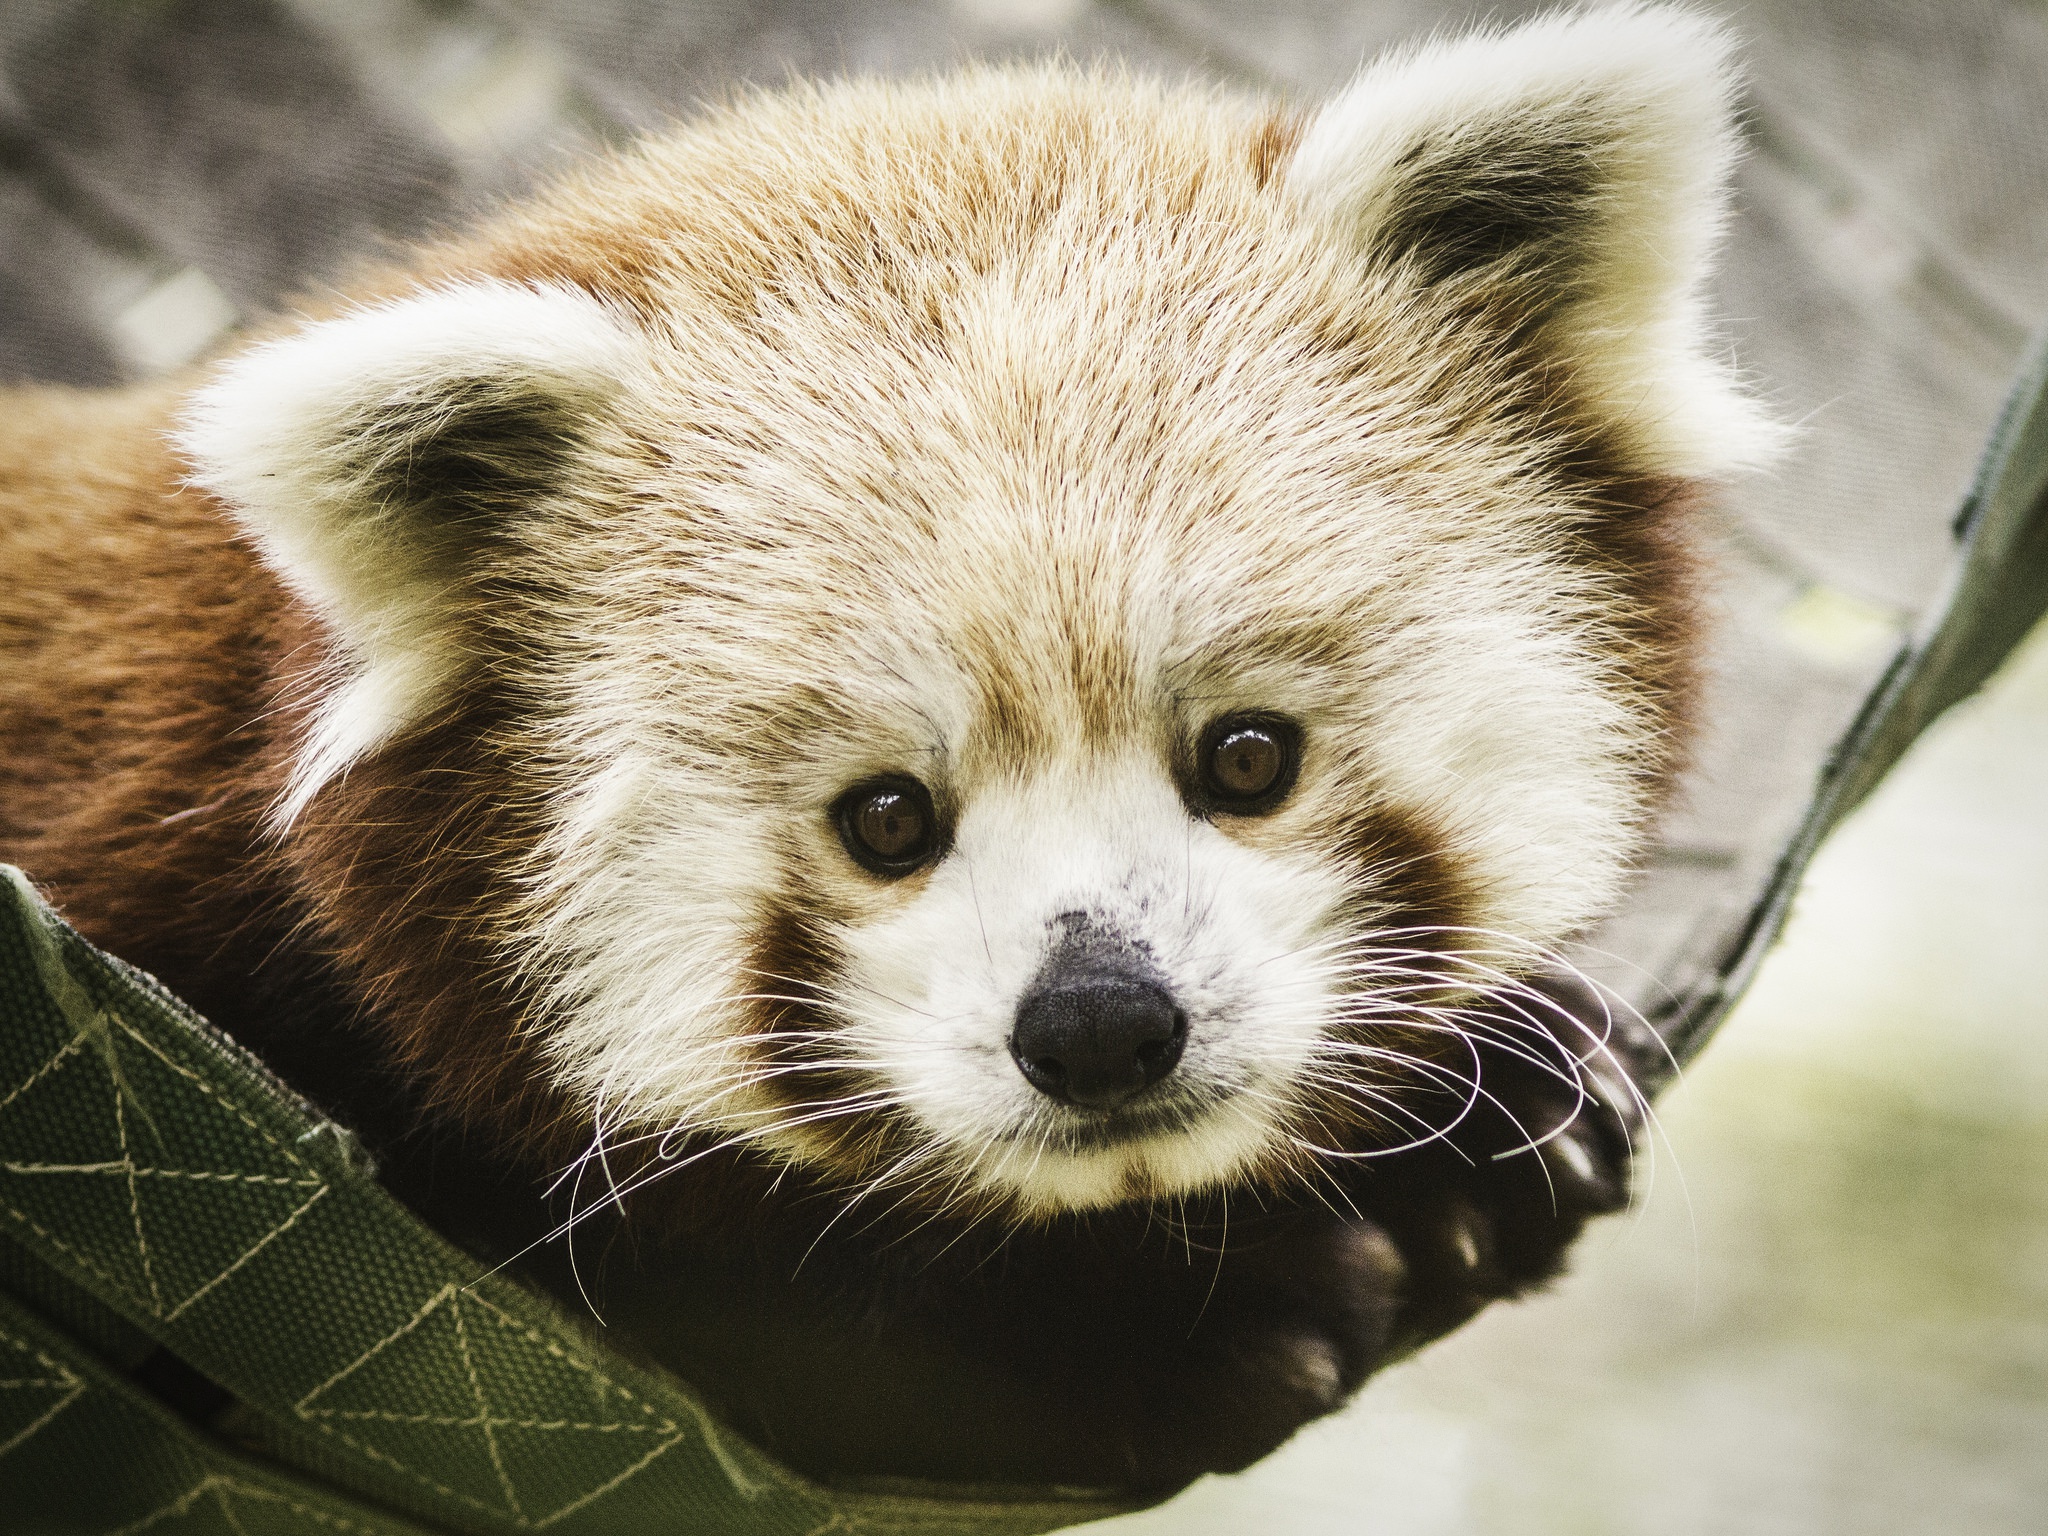 Descarga gratuita de fondo de pantalla para móvil de Animales, Panda Rojo, Mirar Fijamente.